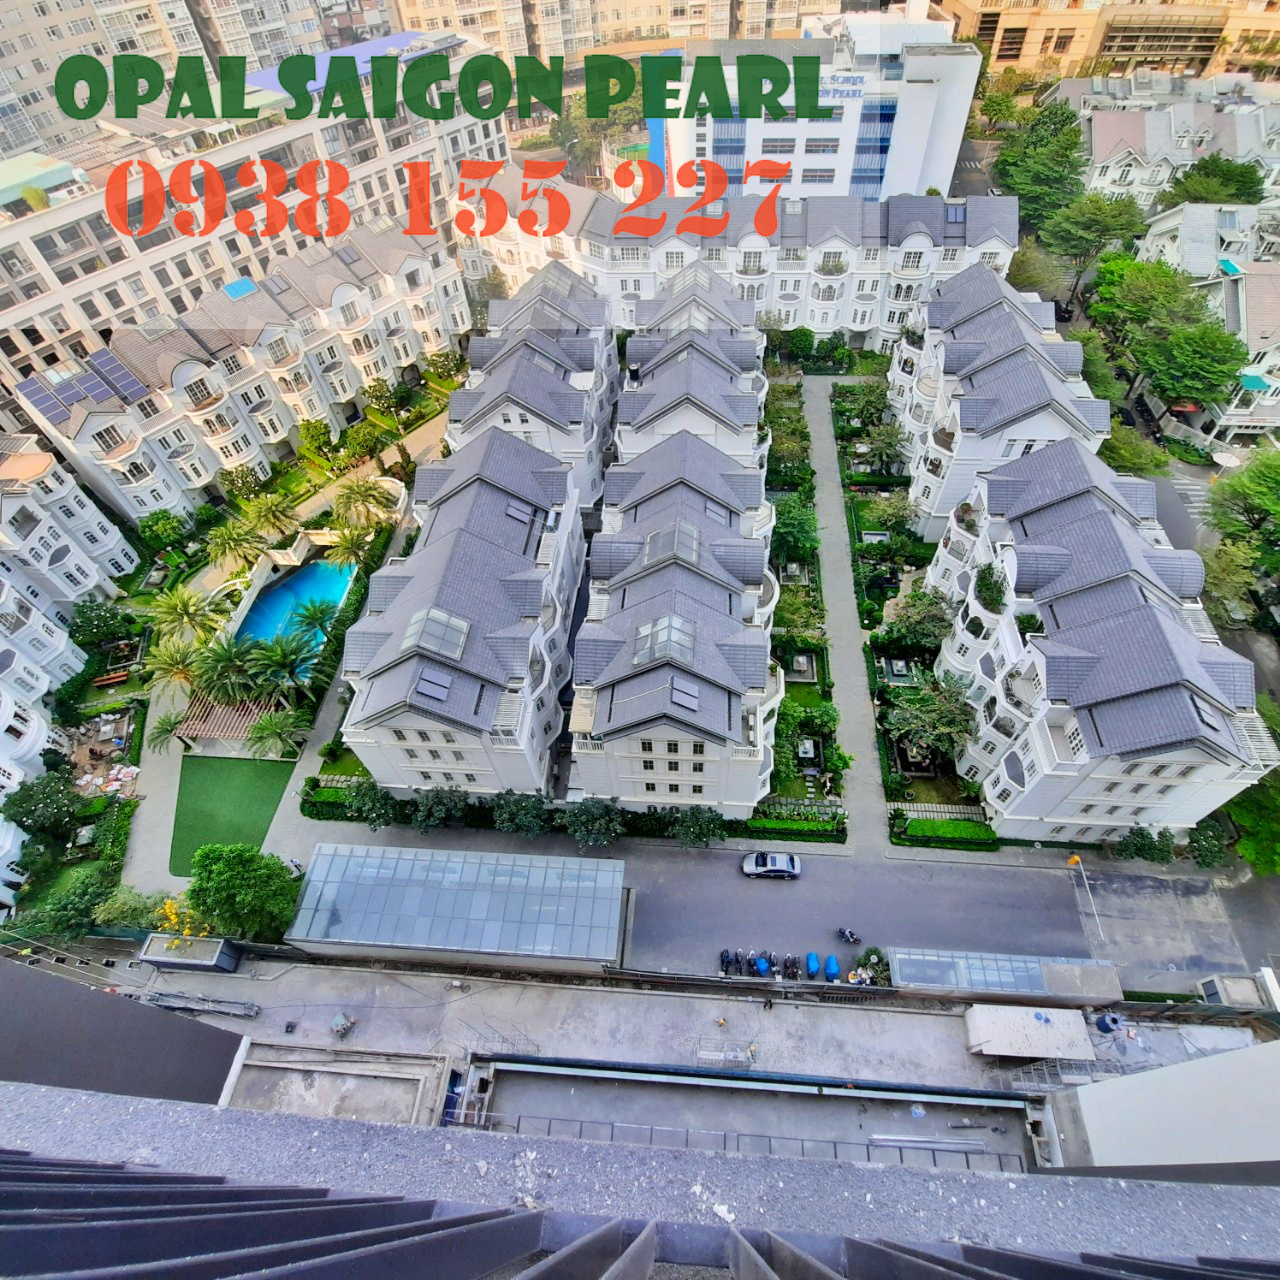 Căn hộ tại Opal Tower - Saigon Pearl, căn 2PN-95m2 cho thuê . Hotline PKD 0938 155 227